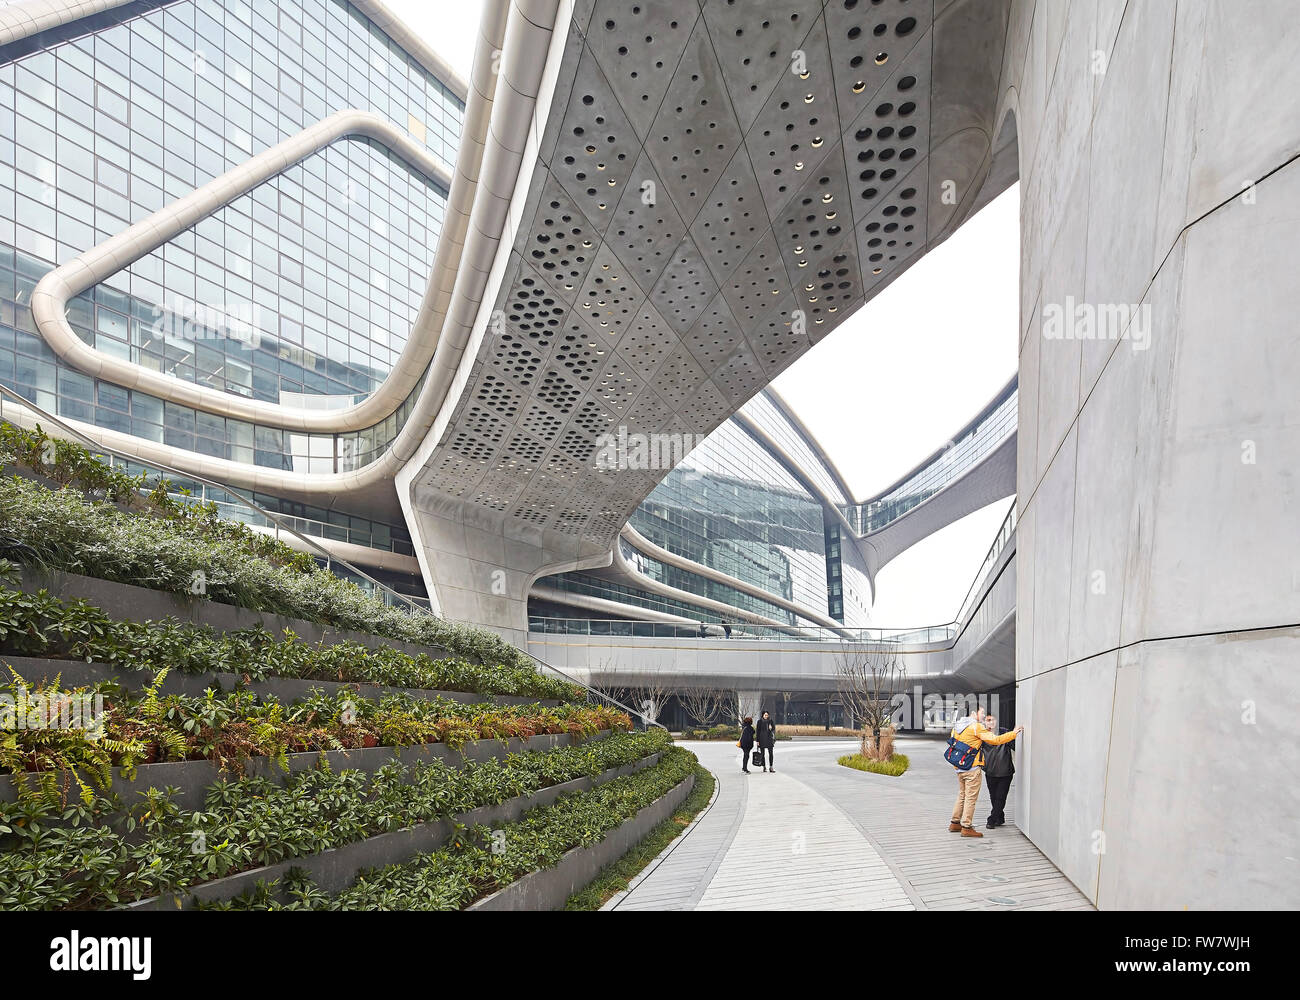 Angelegten Gehwege und Untersicht der Brücke. Himmel SOHO, Shanghai, China. Architekt: Zaha Hadid Architects, 2014. Stockfoto